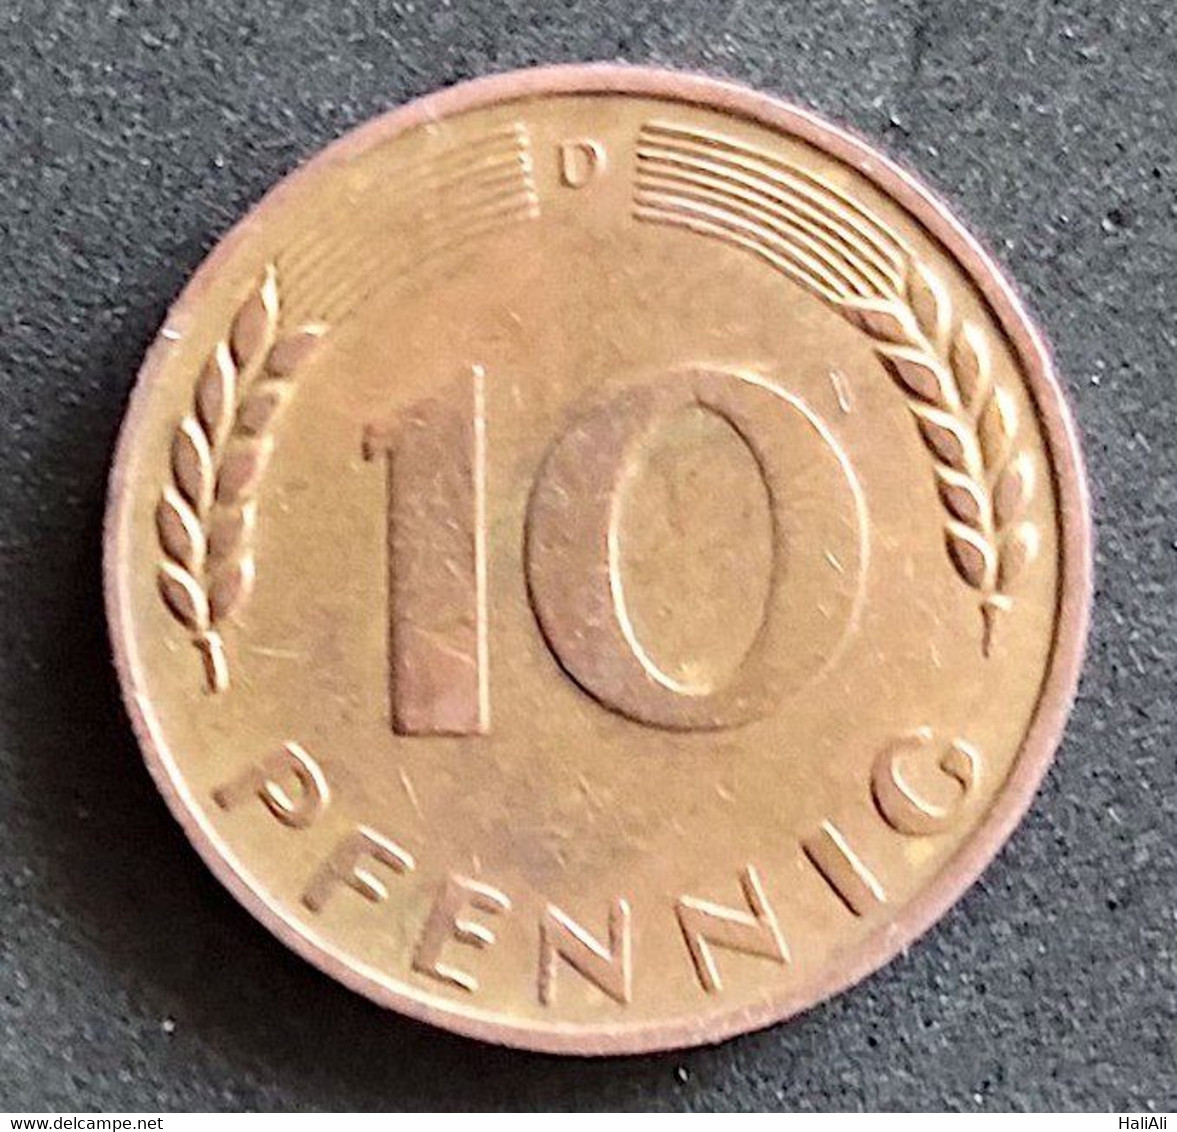 Coin Germany Moeda Alemanha 1949 10 Pfennig D 1 - 10 Pfennig